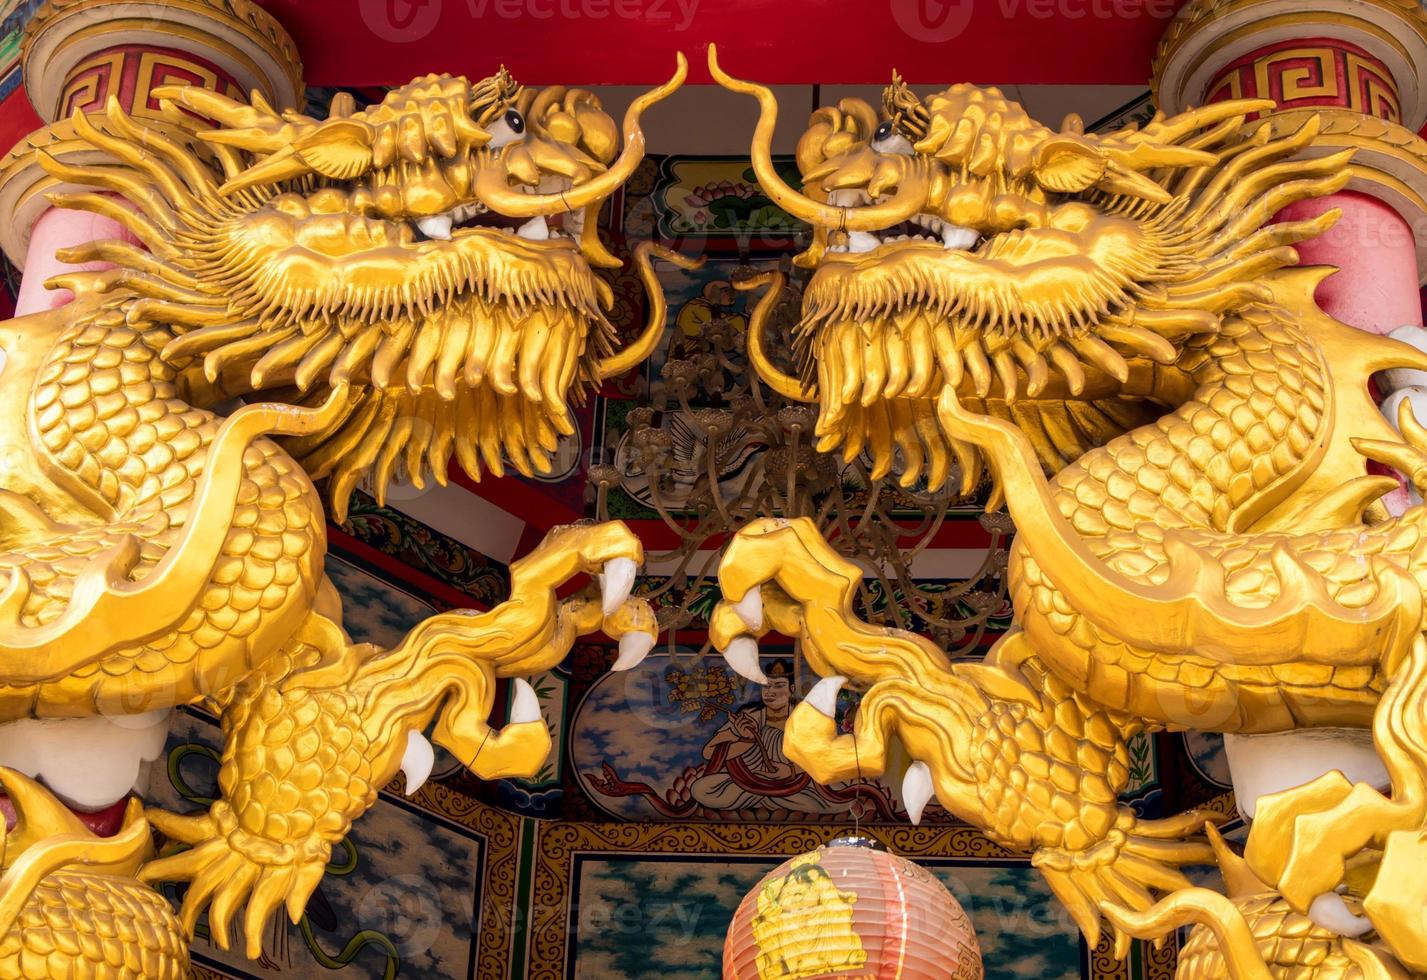 statues de dragon d'or dans les lieux religieux chinois photo